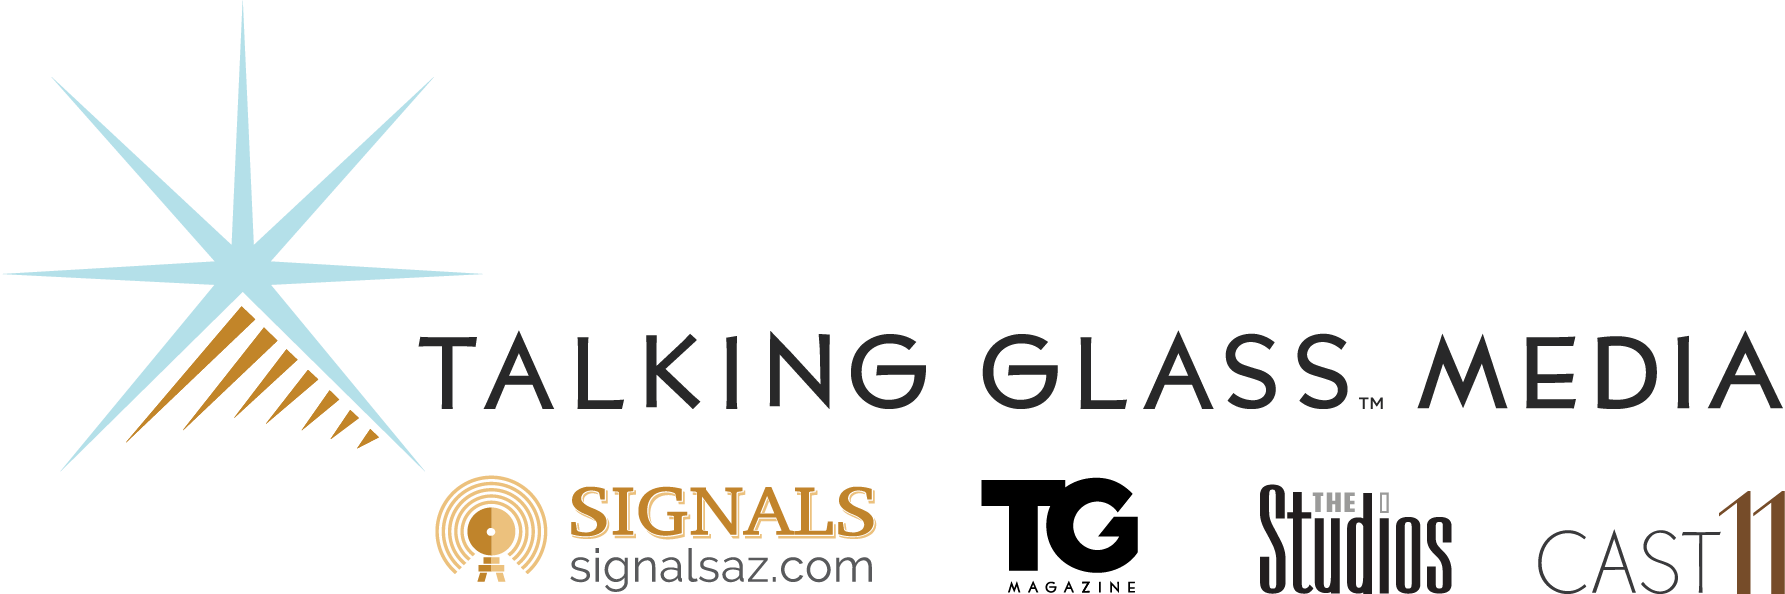 Talking Glass Media Prescott Valley advertising